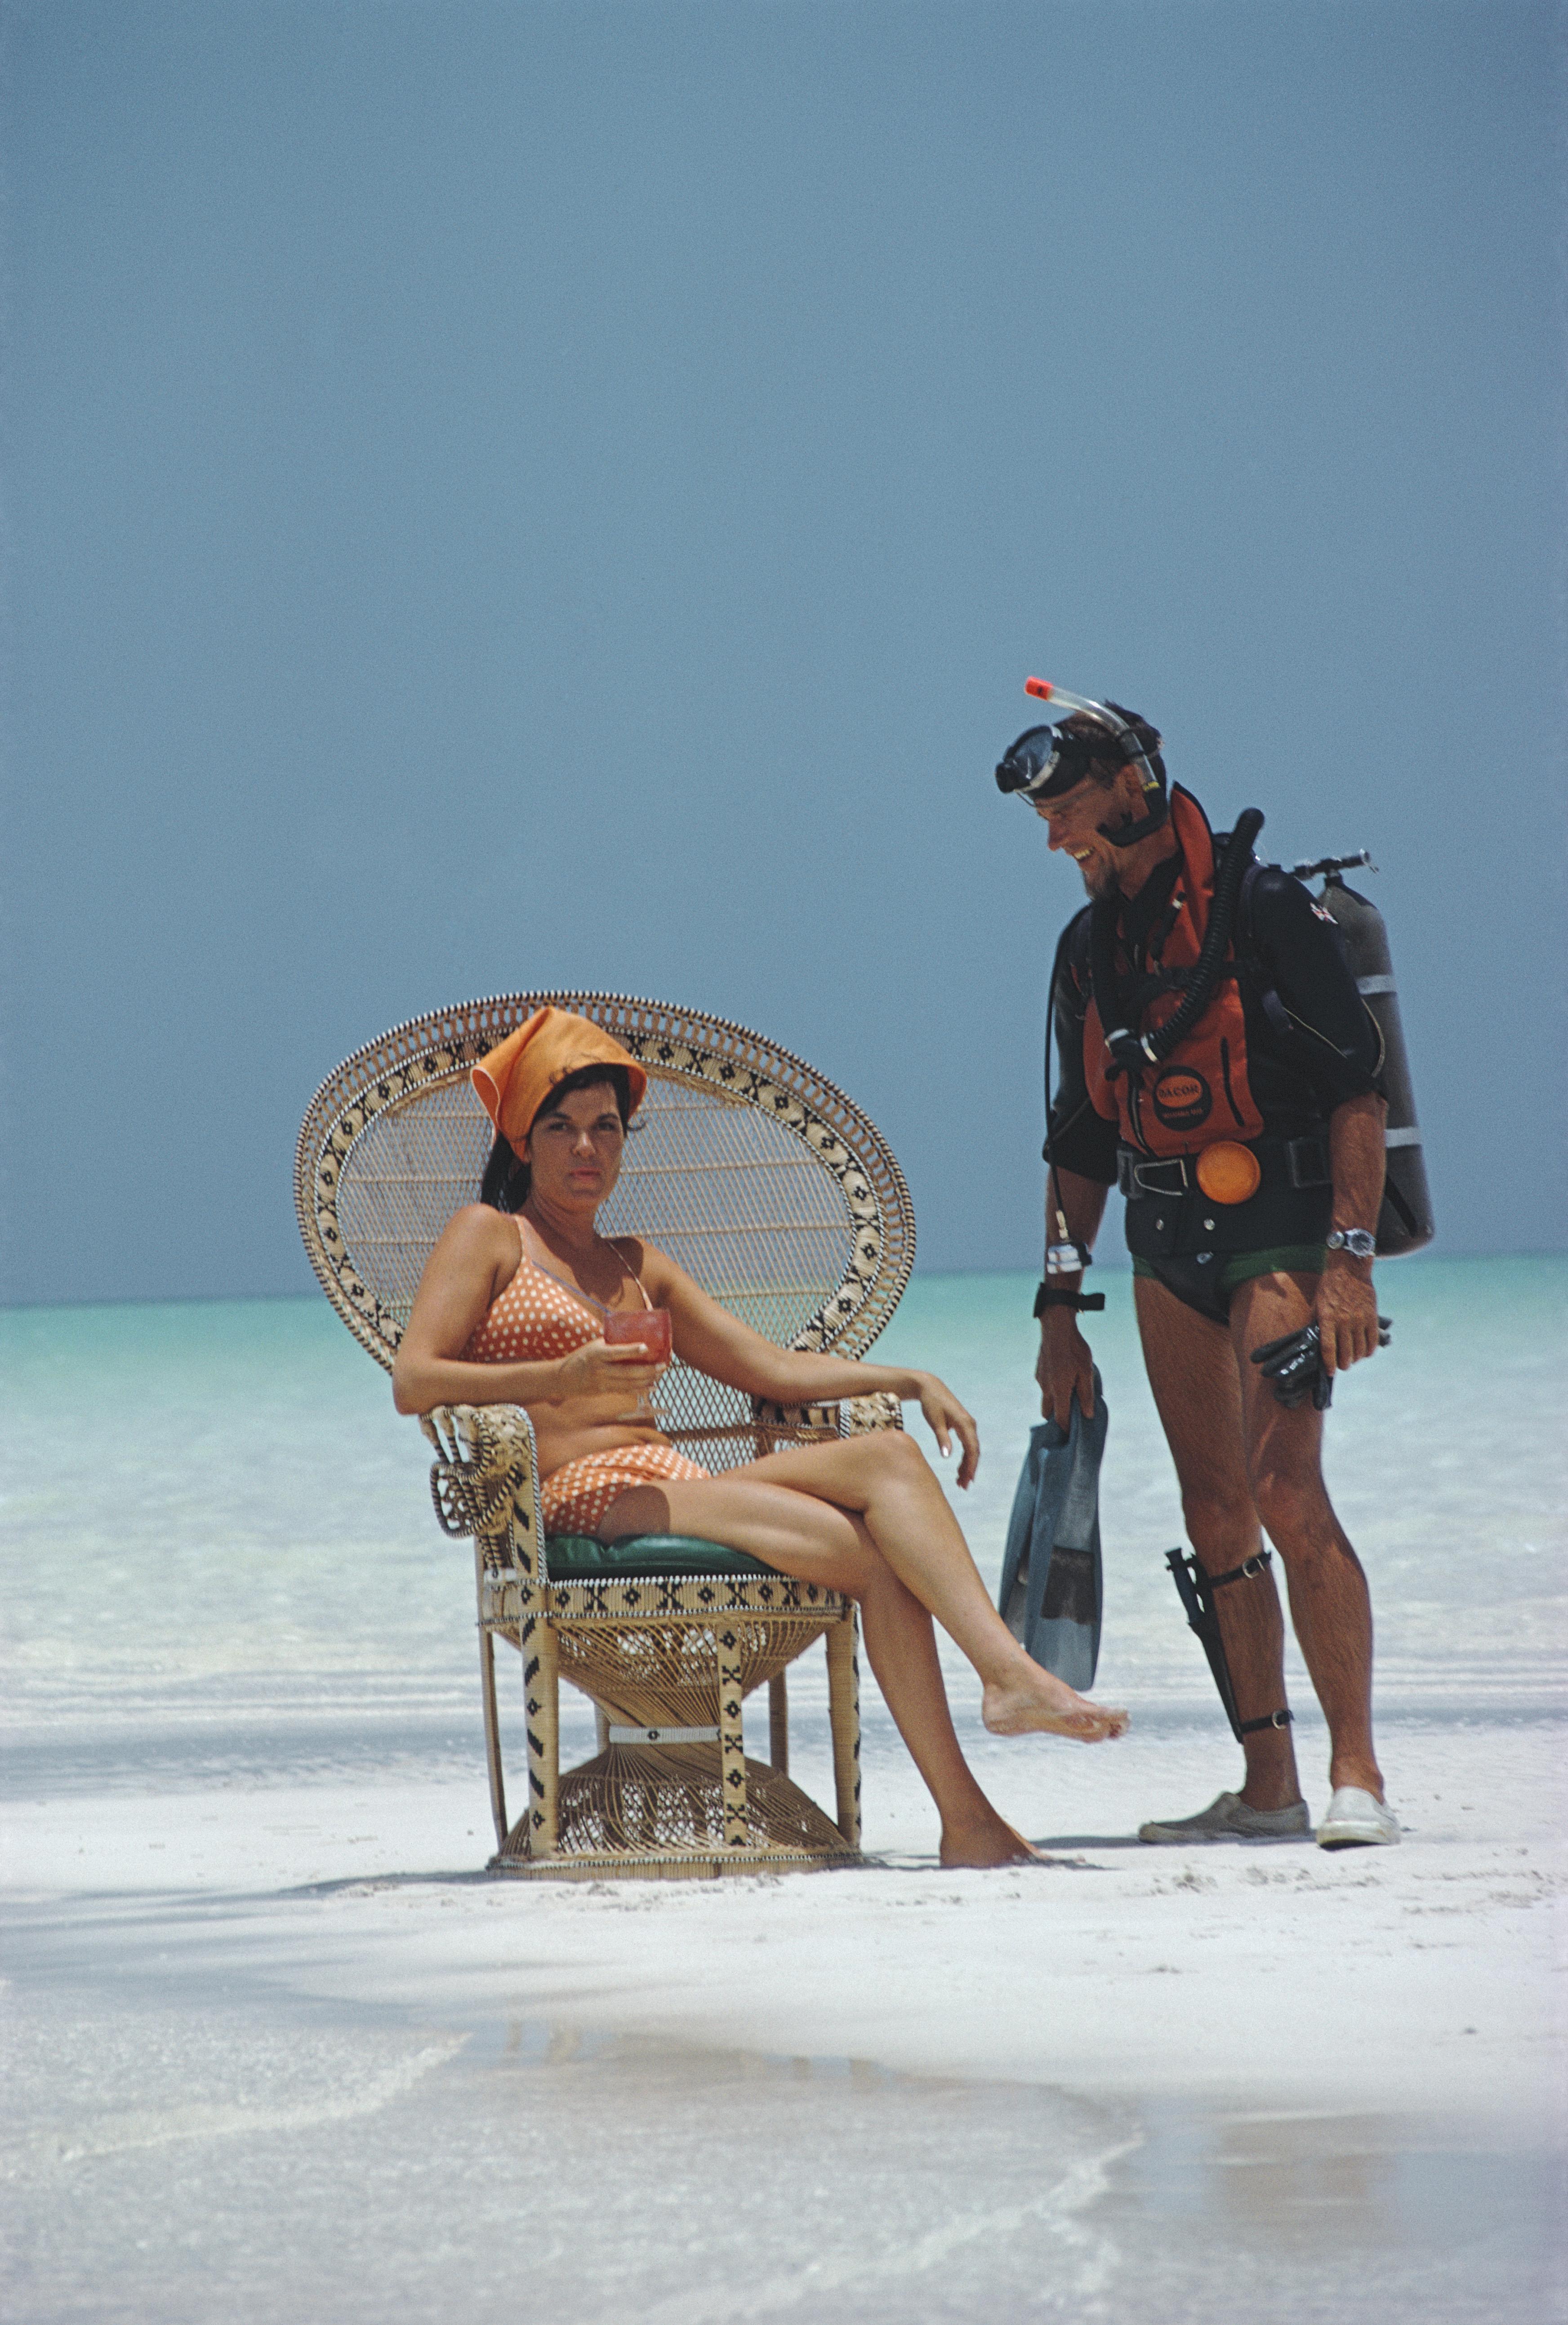 Un homme portant un équipement de plongée discute avec une jeune fille dans un fauteuil en osier sur la plage, Bahamas, 1967, Impression ultérieure

Slim Aarons
Une discussion amicale
Bahamas
Tirage chromogène Lambda 
Slim Aarons Estate